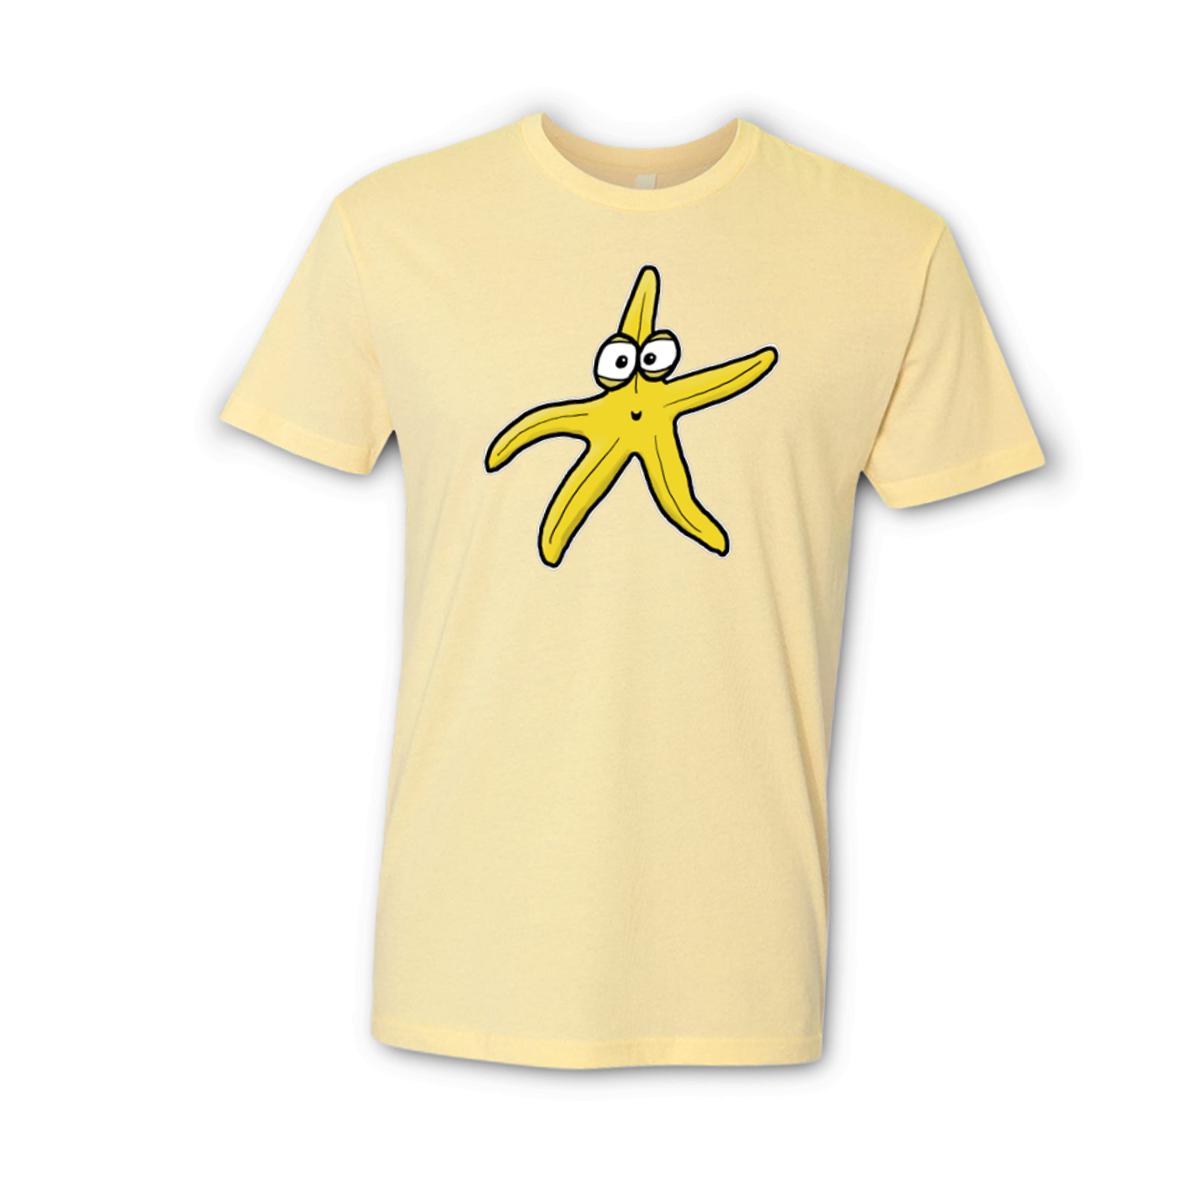 Starfish Unisex Tee Small banana-cream